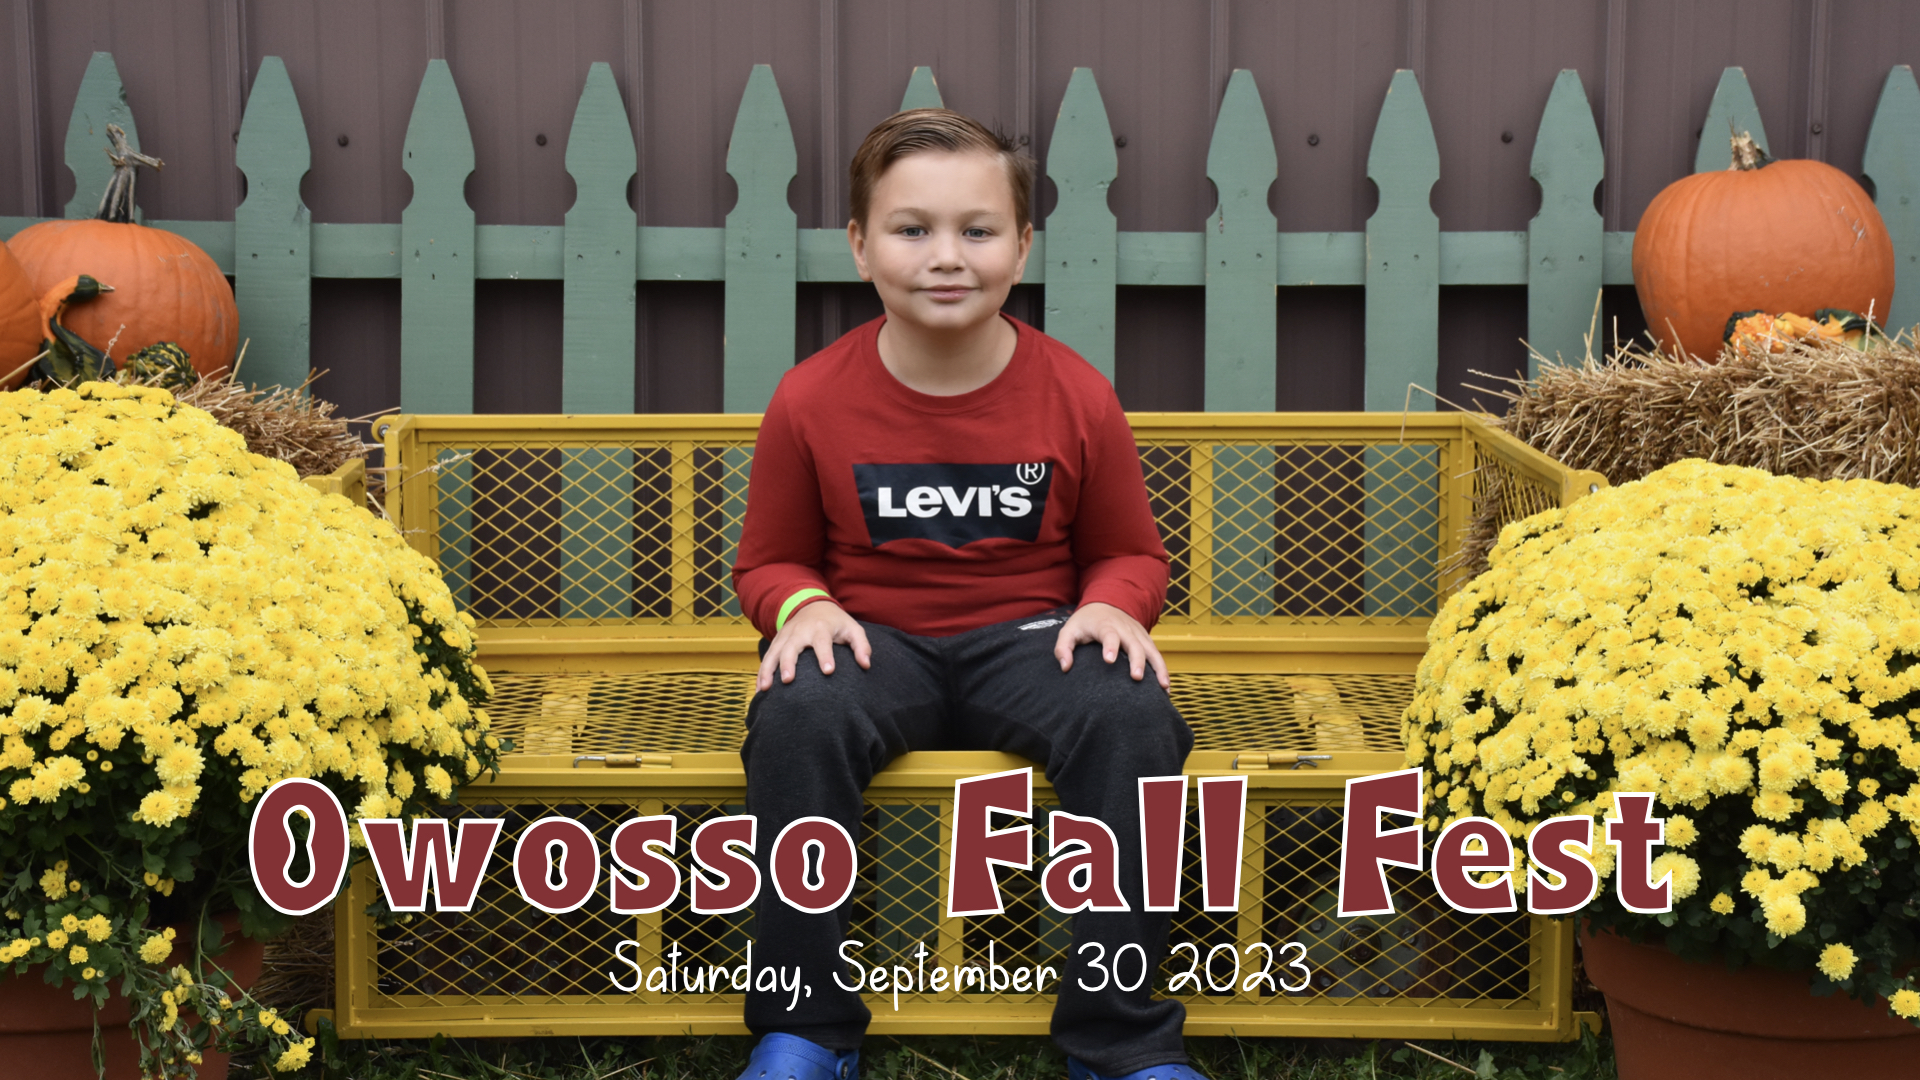 Owosso Fall Fest '23.002